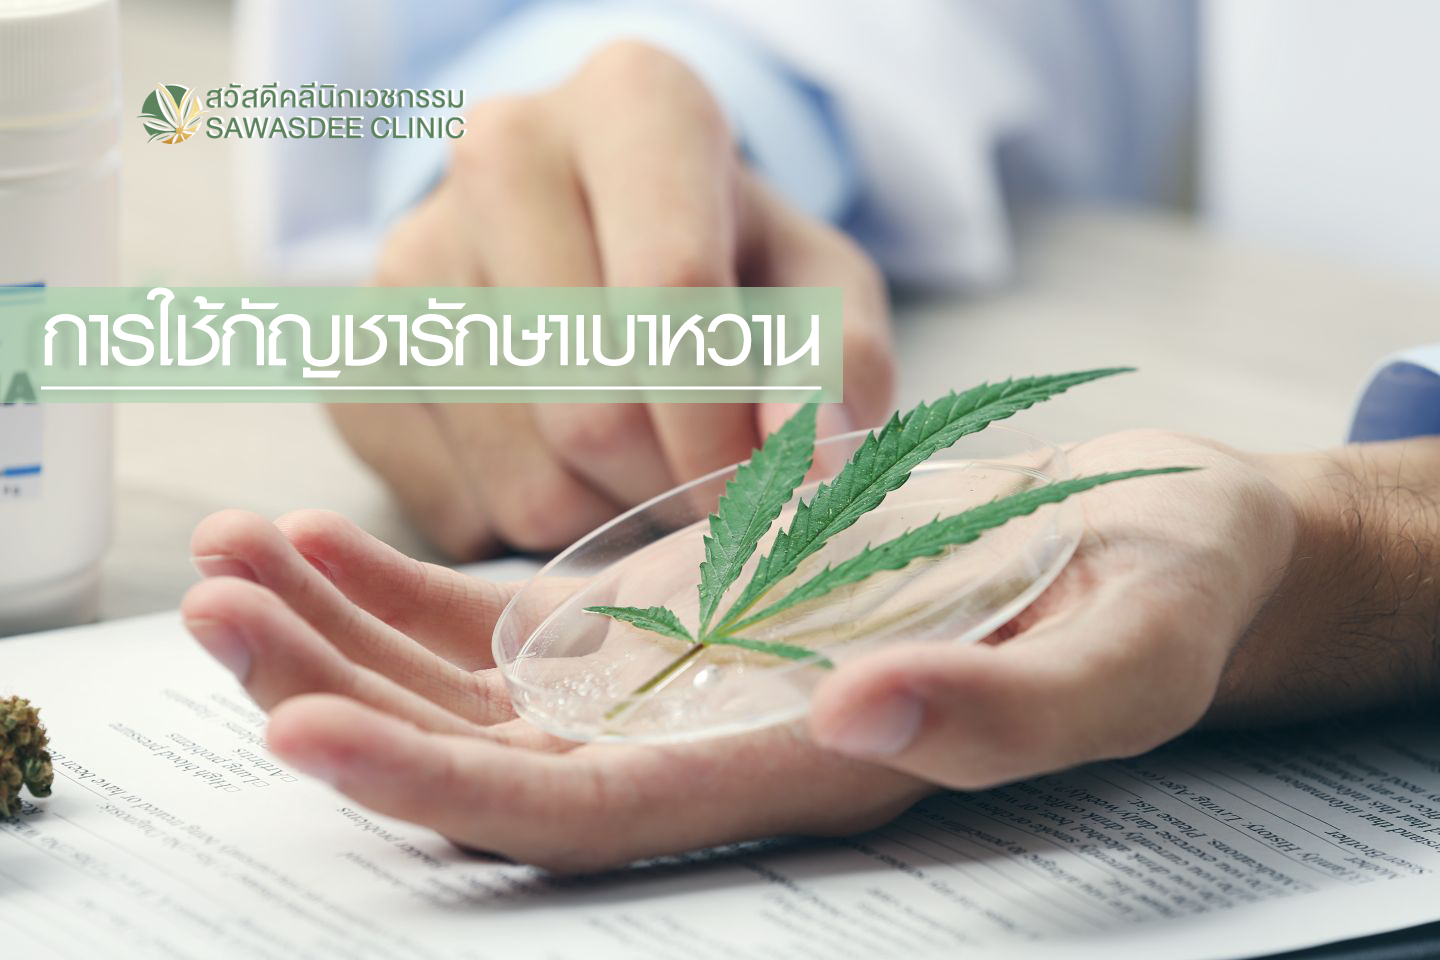 เบาหวาน รักษาด้วยกัญชา cannabis bangkok